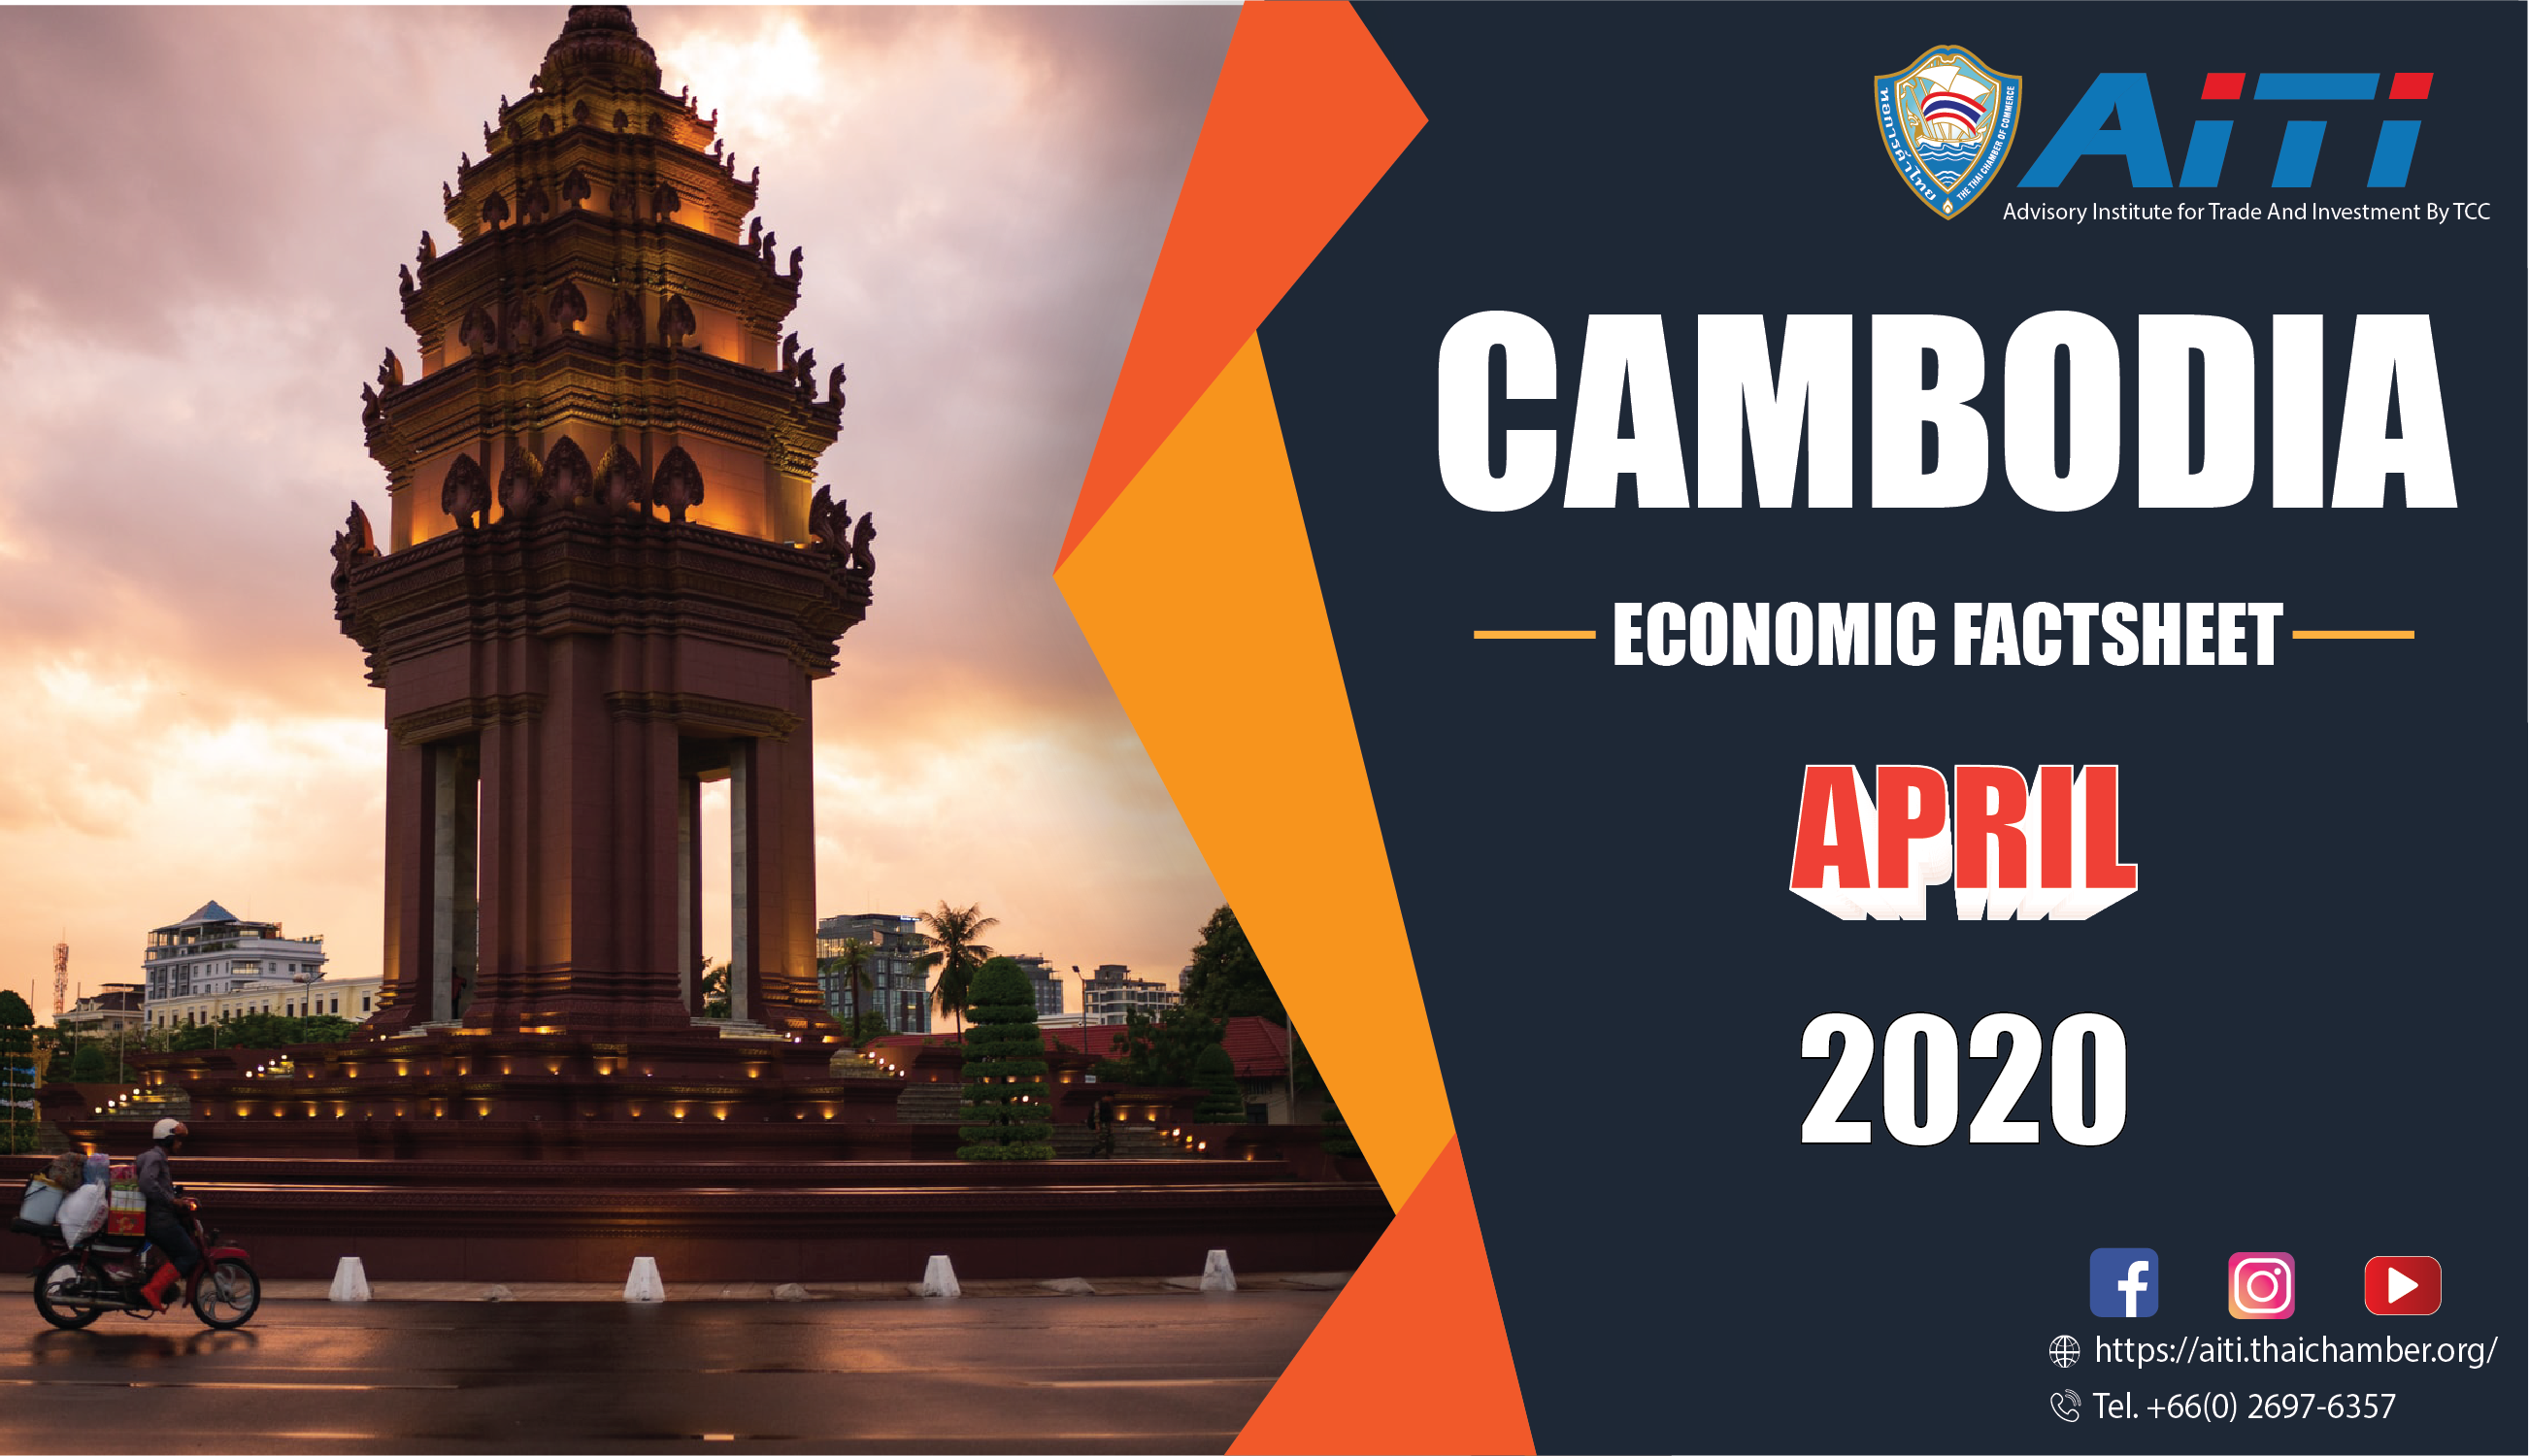 Cambodia Economic Factsheet : APRIL 2020